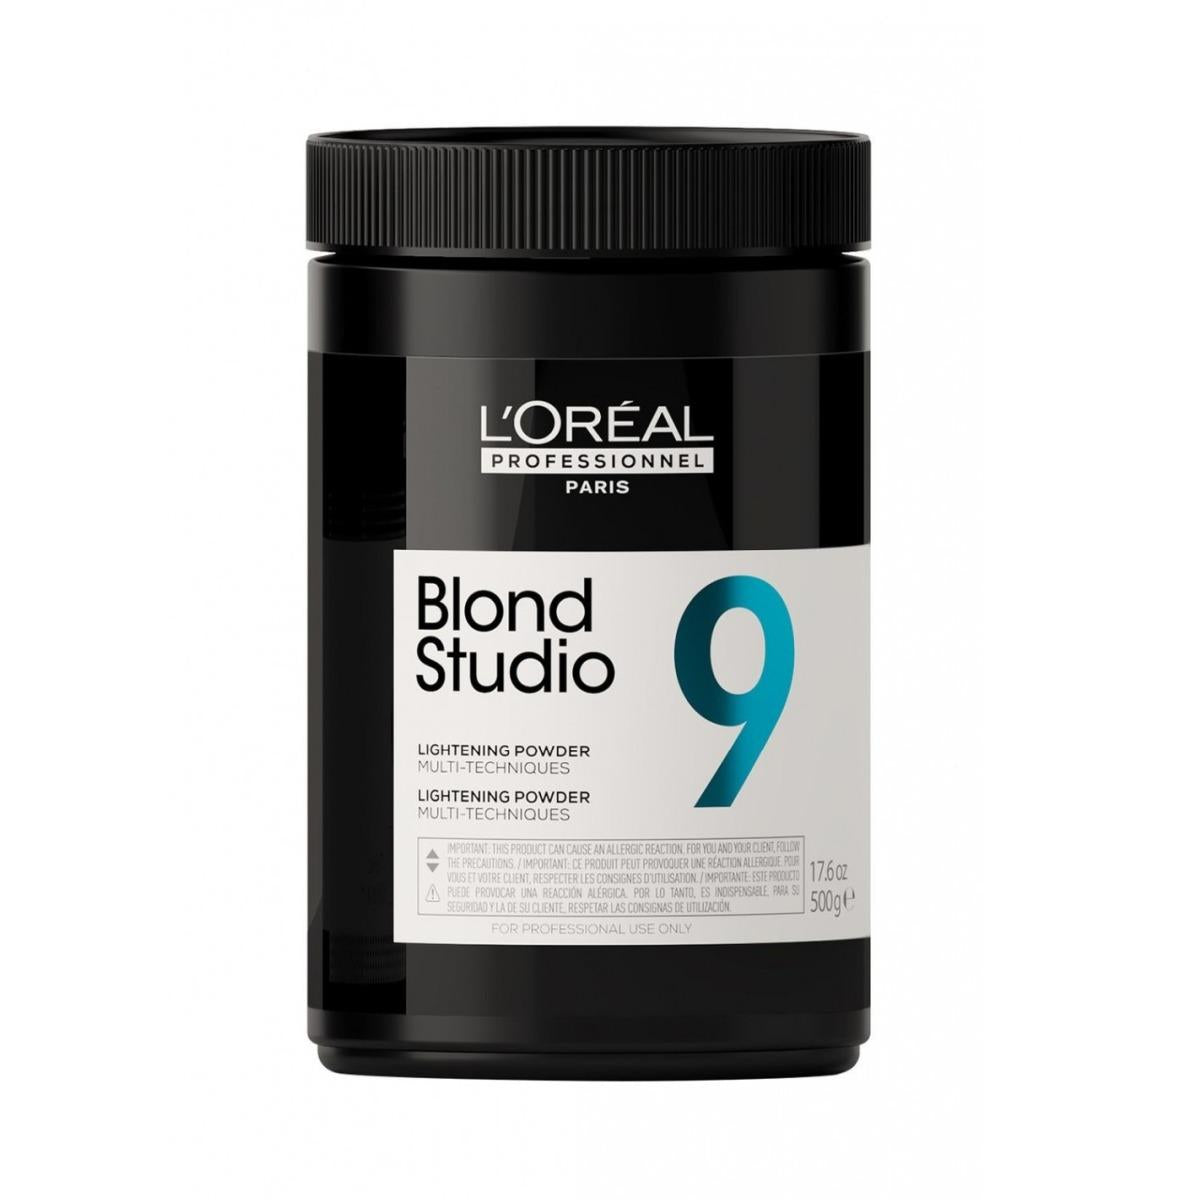 L'OREAL Blond Studio 9 Decolorante Multi-Techniques 500g